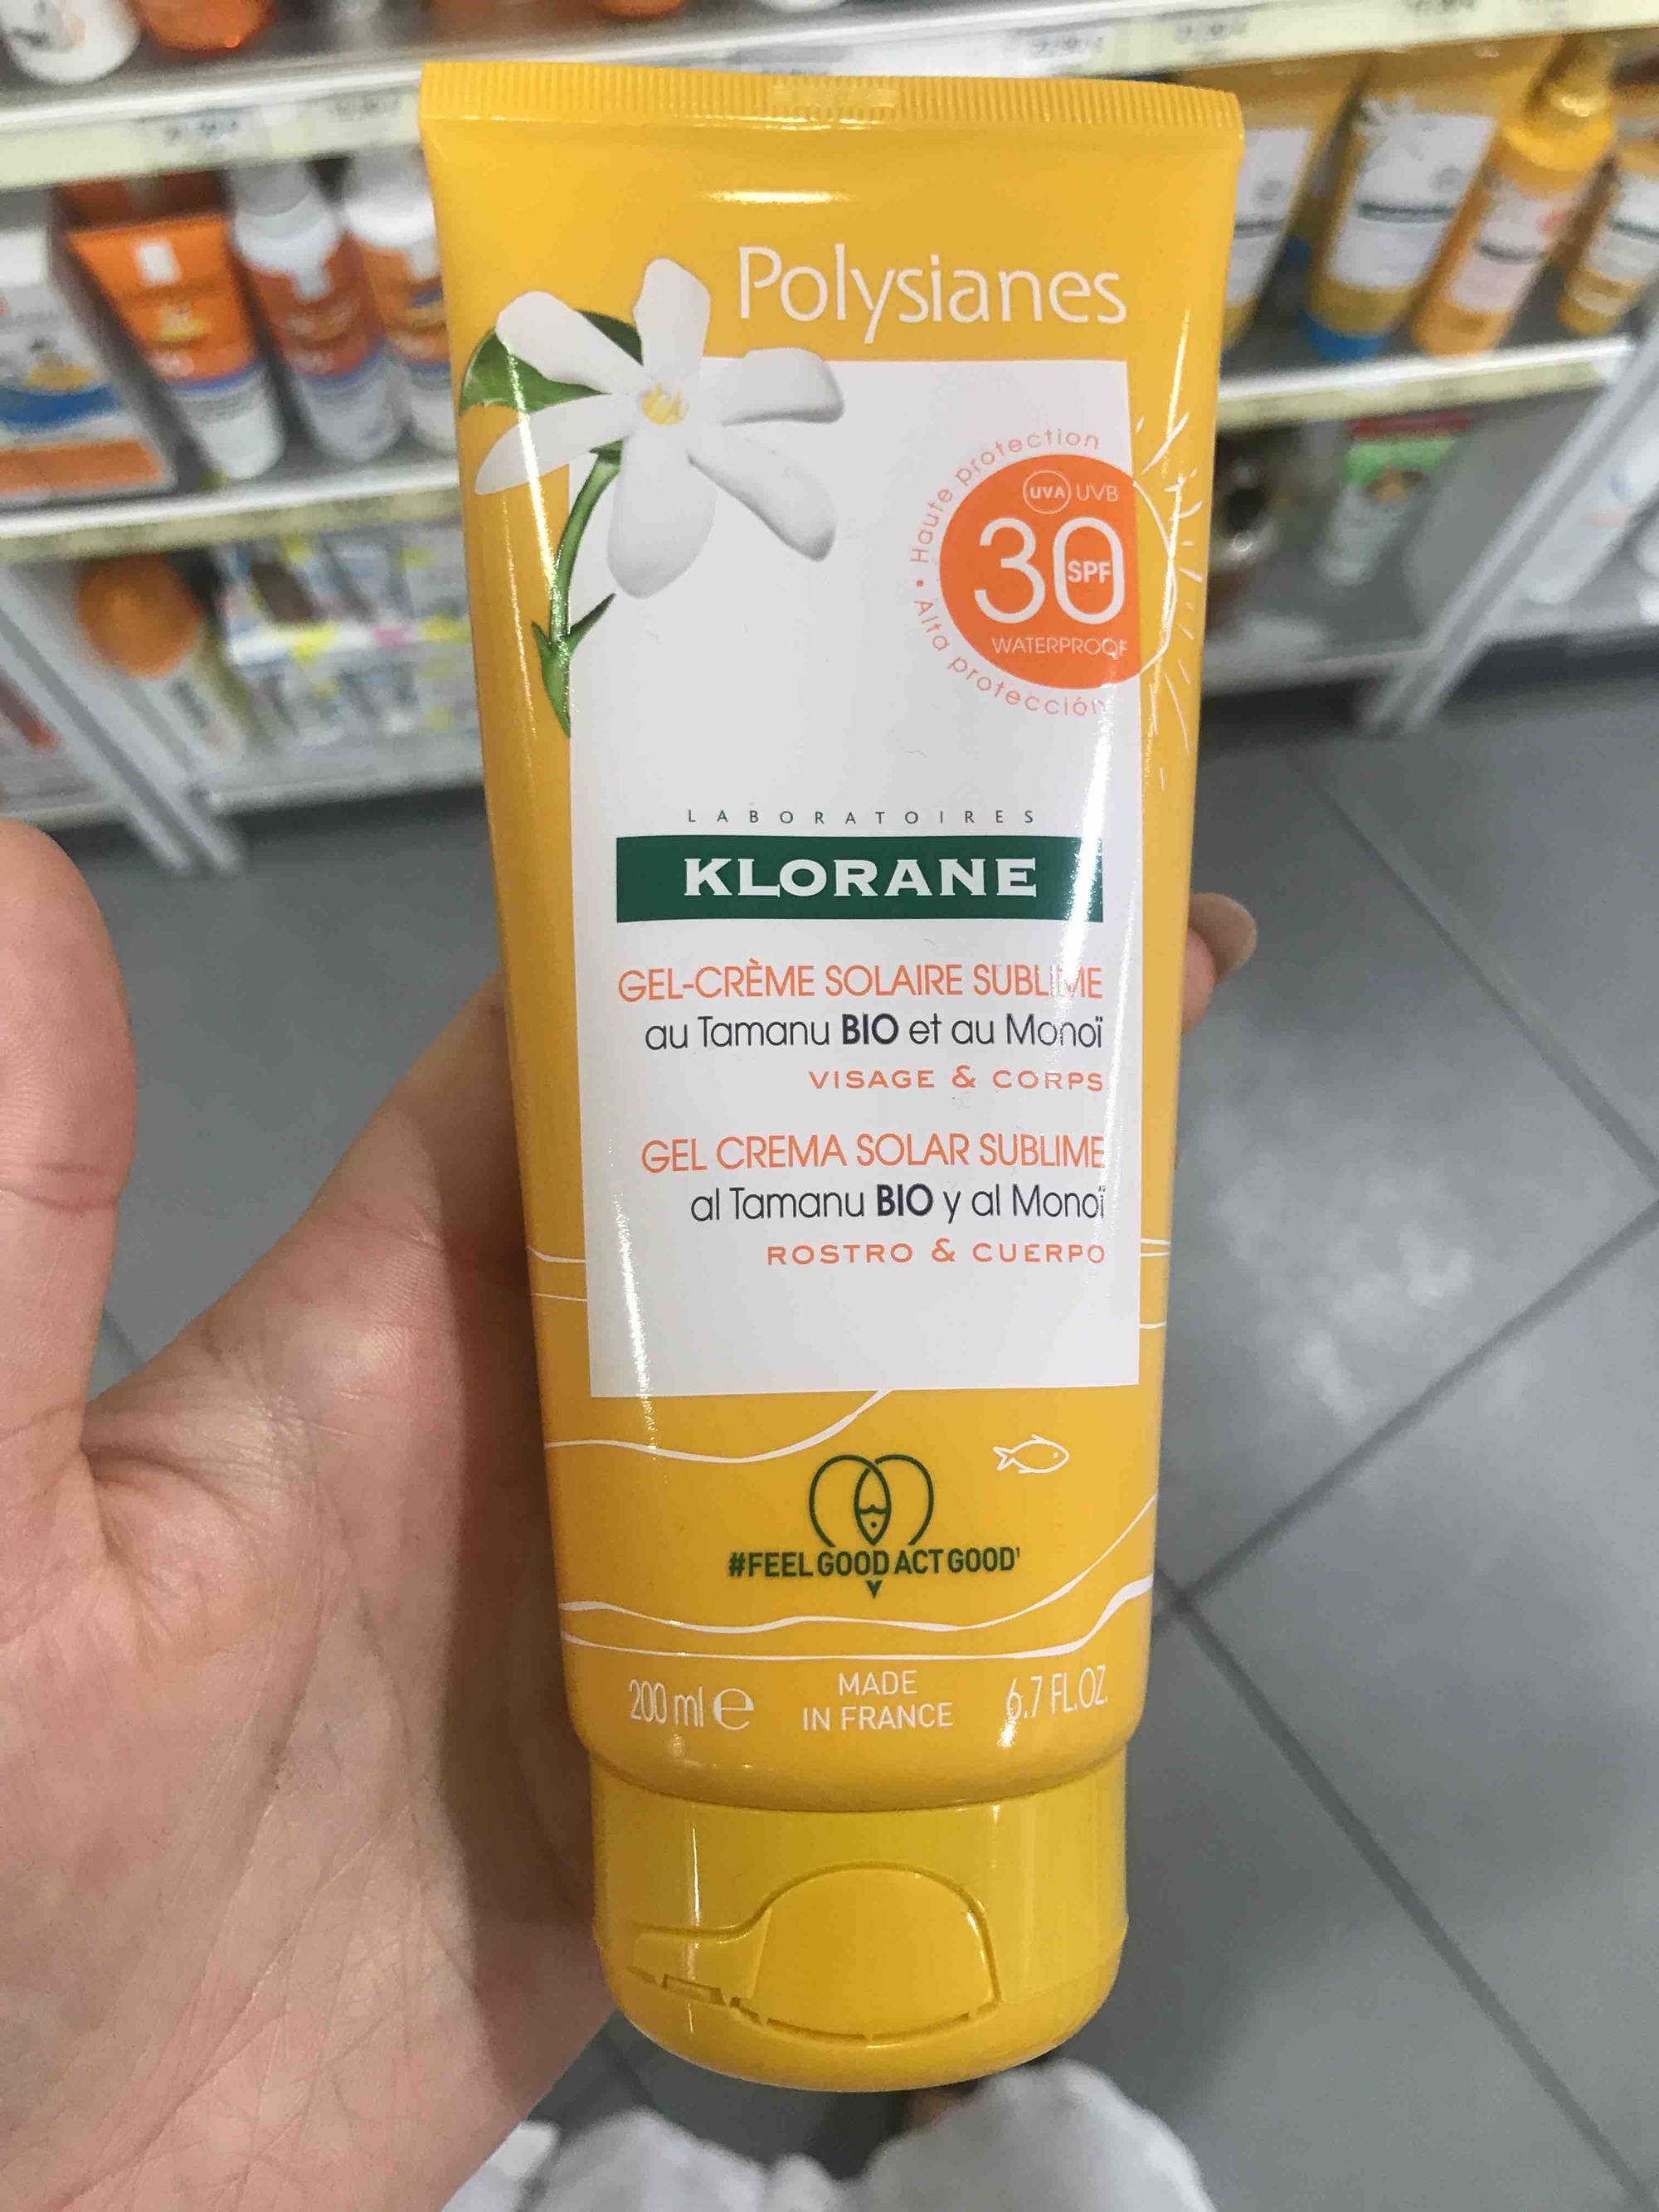 KLORANE - Polysianes - Gel-crème solaire sublime  SPF 30